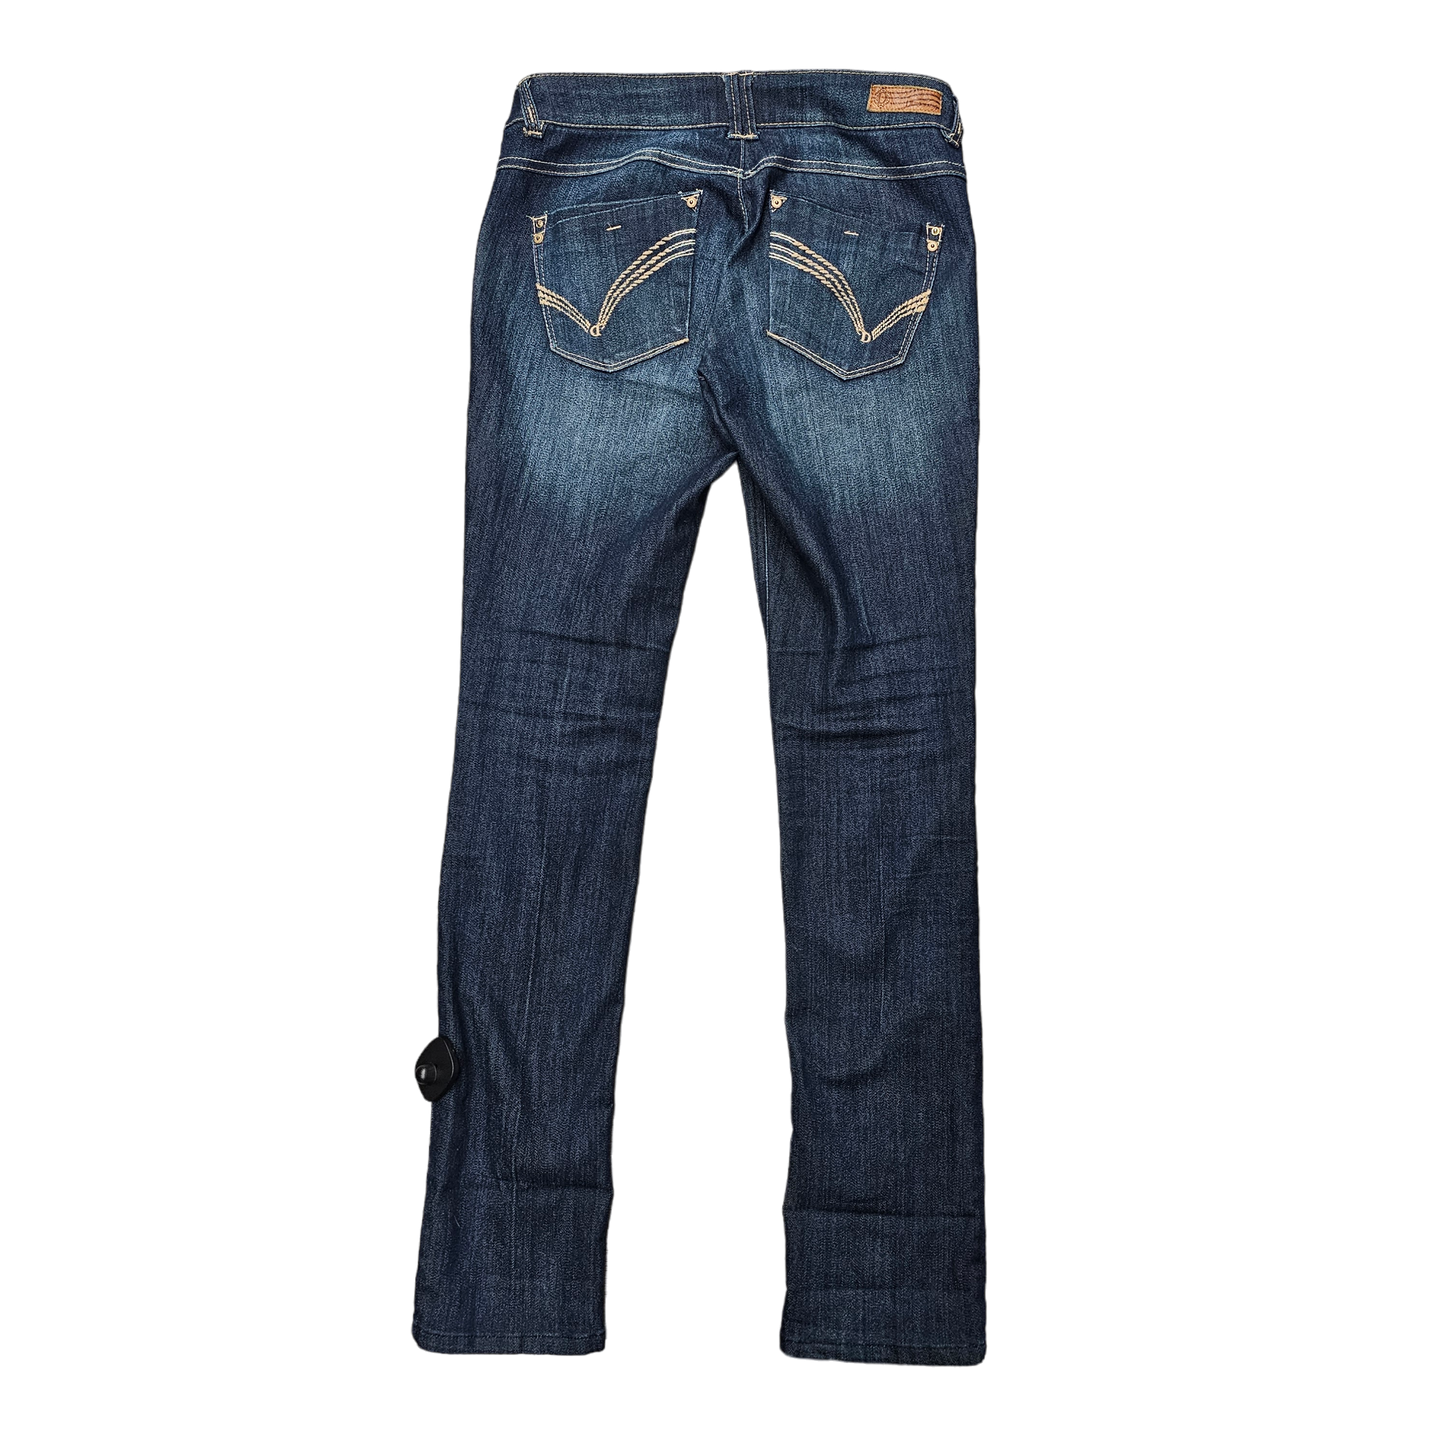 Jeans Skinny By Democracy  Size: 2